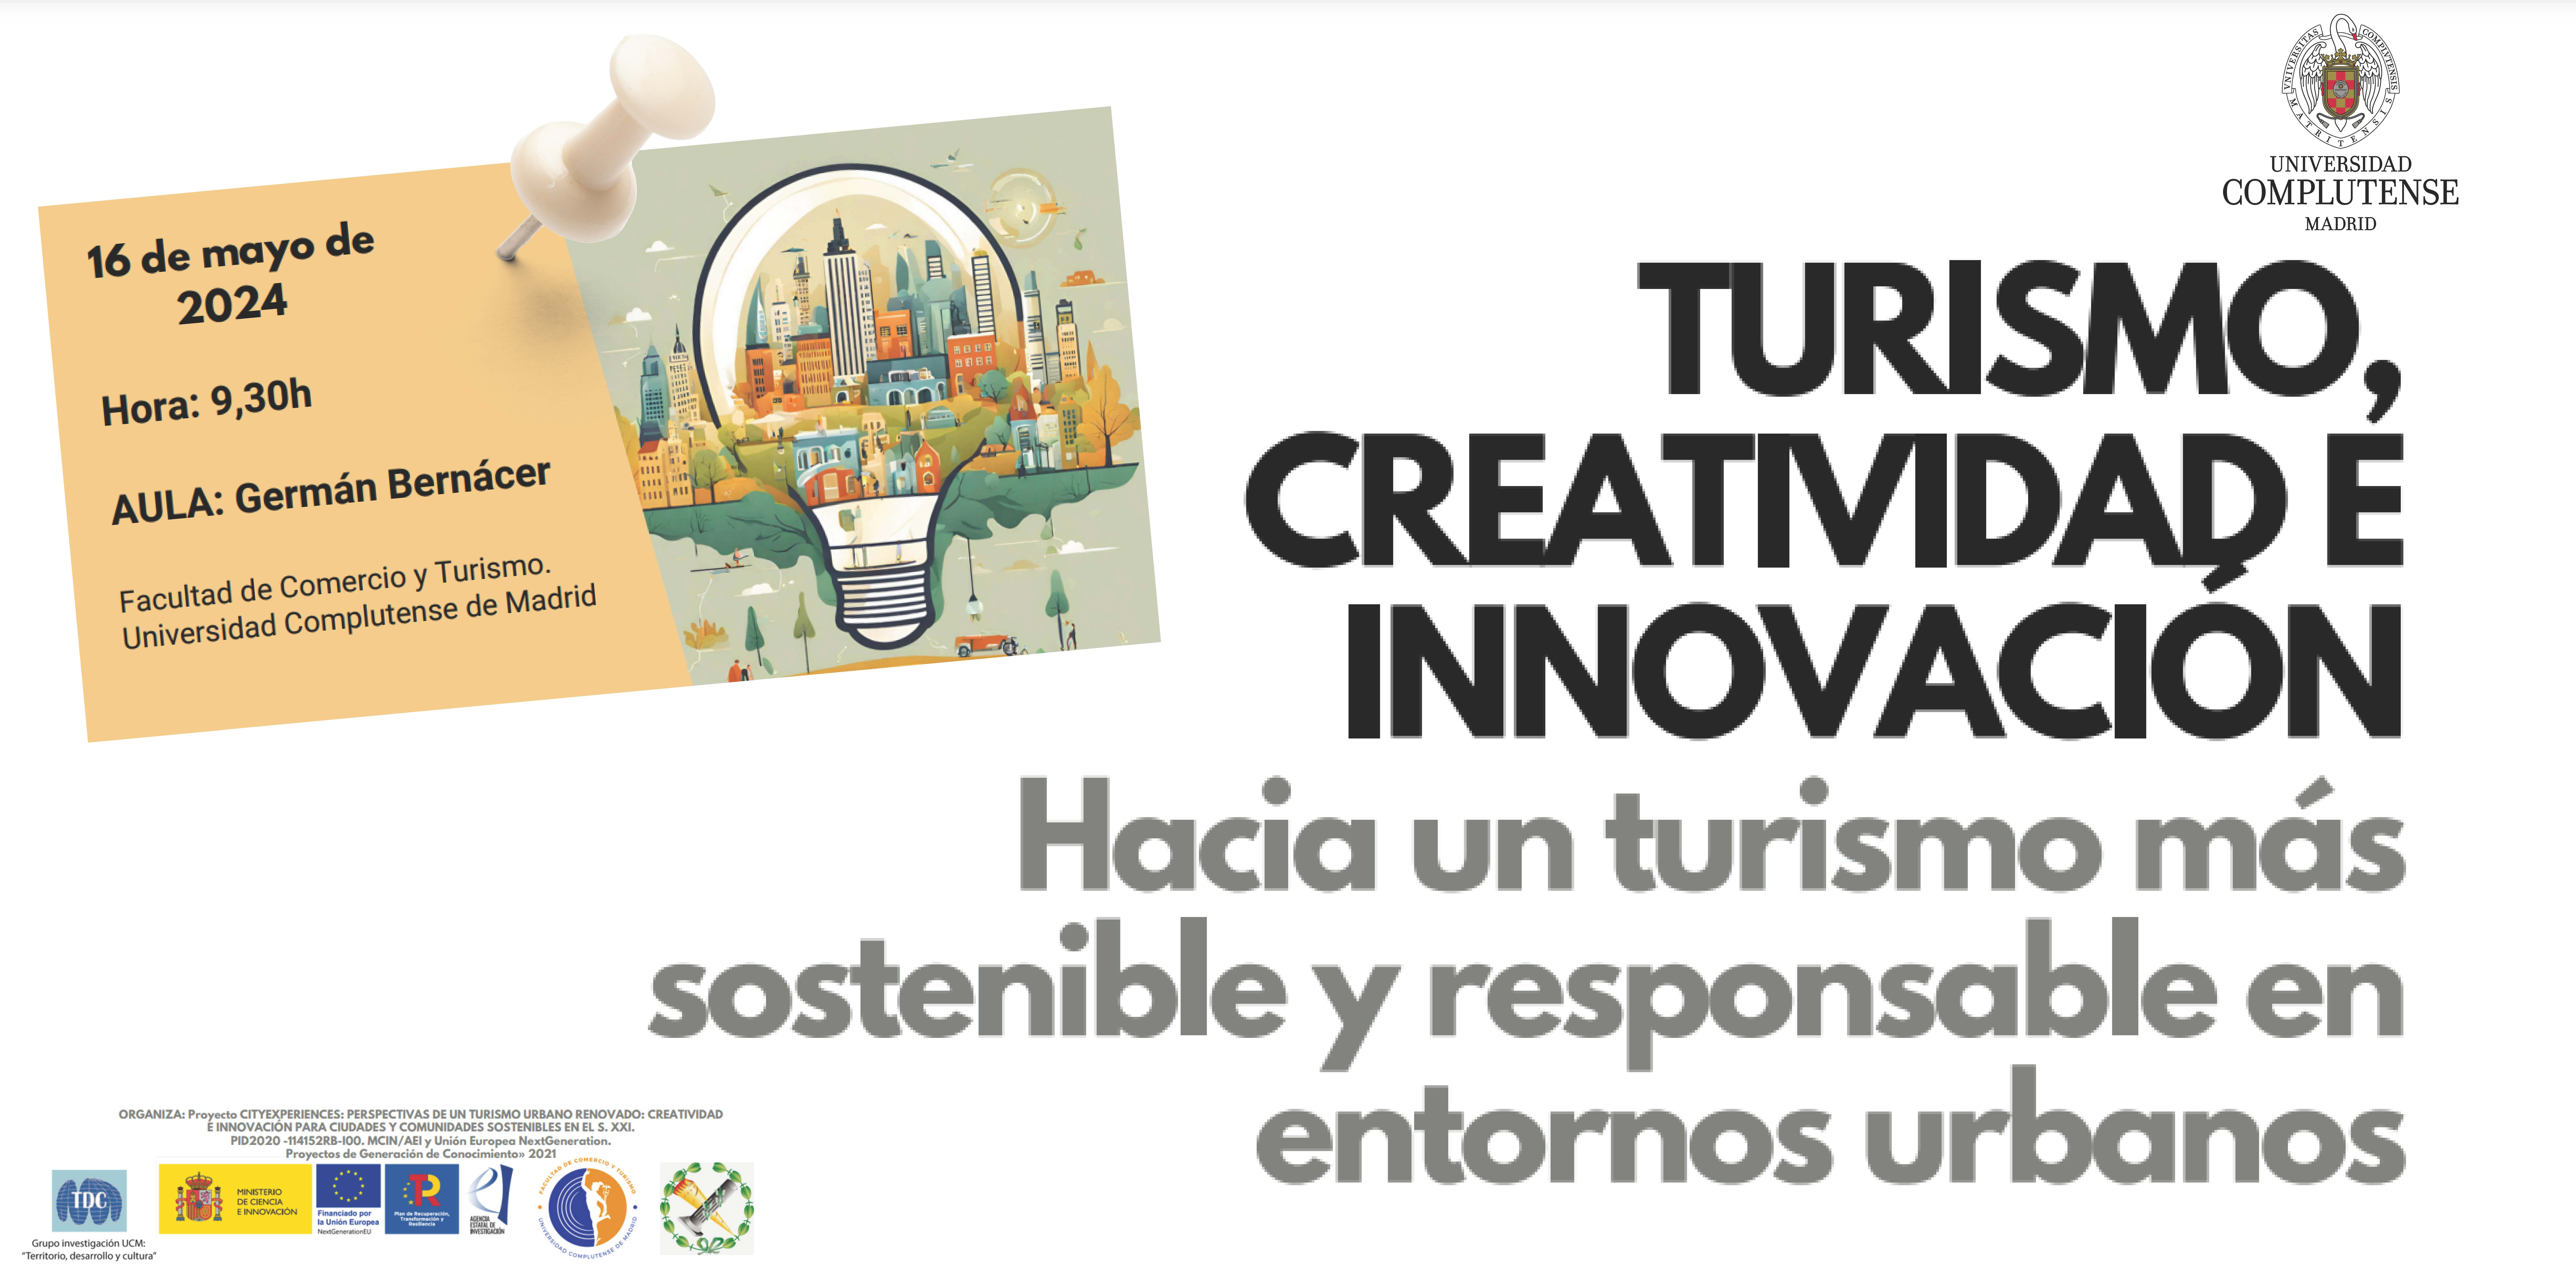 Workshop: TURISMO, CREATIVIDAD E INNOVACIÓN. Hacia un turismo más sostenible y responsable en entornos urbanos